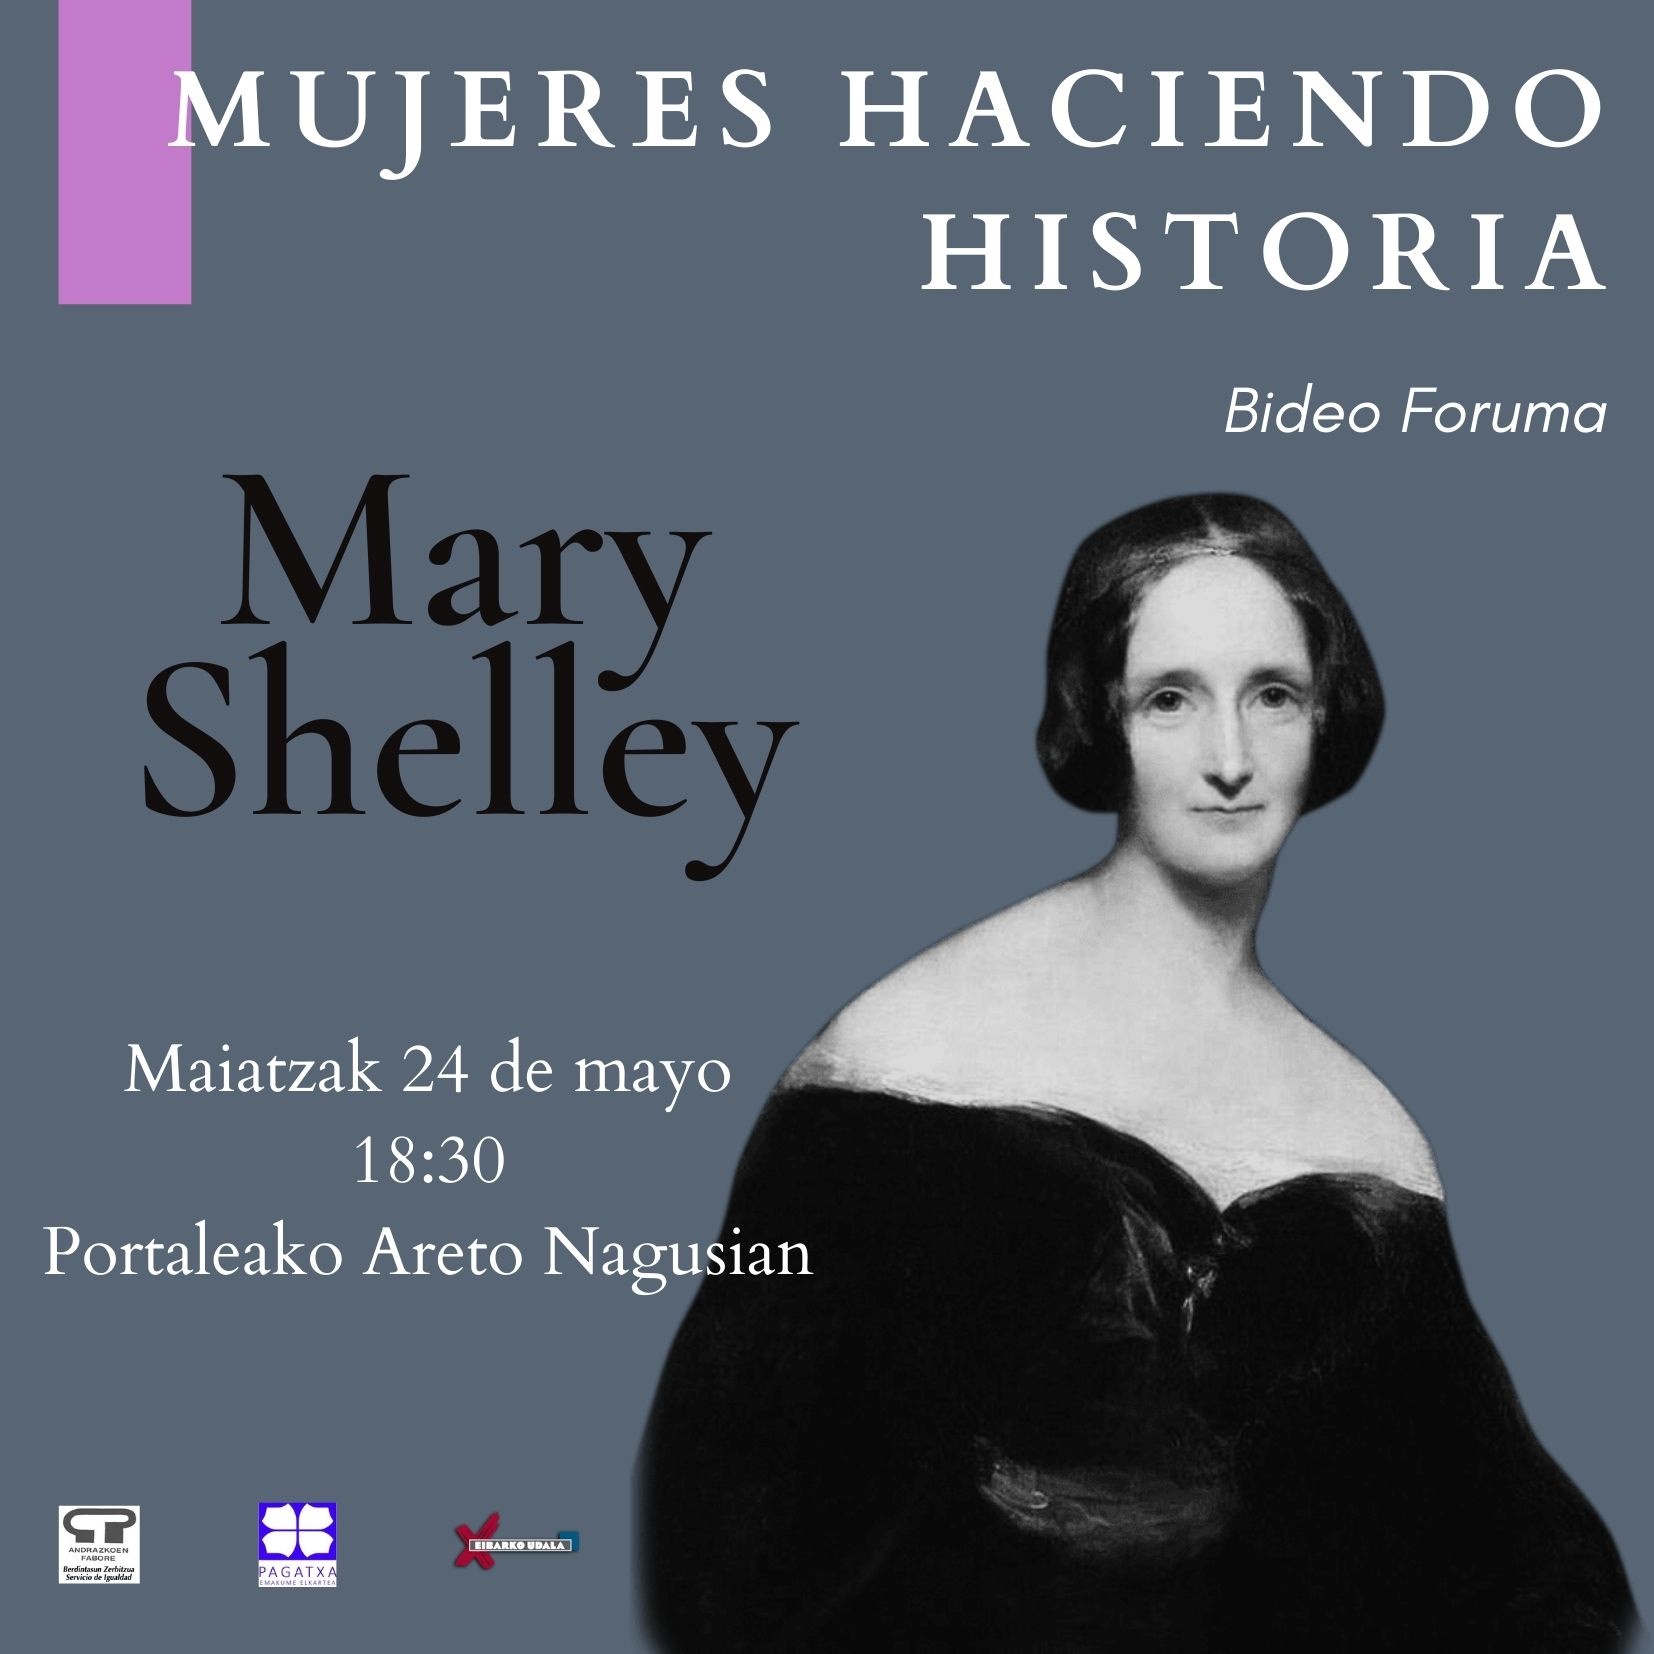 Mujeres haciendo historia: Mary Shelley